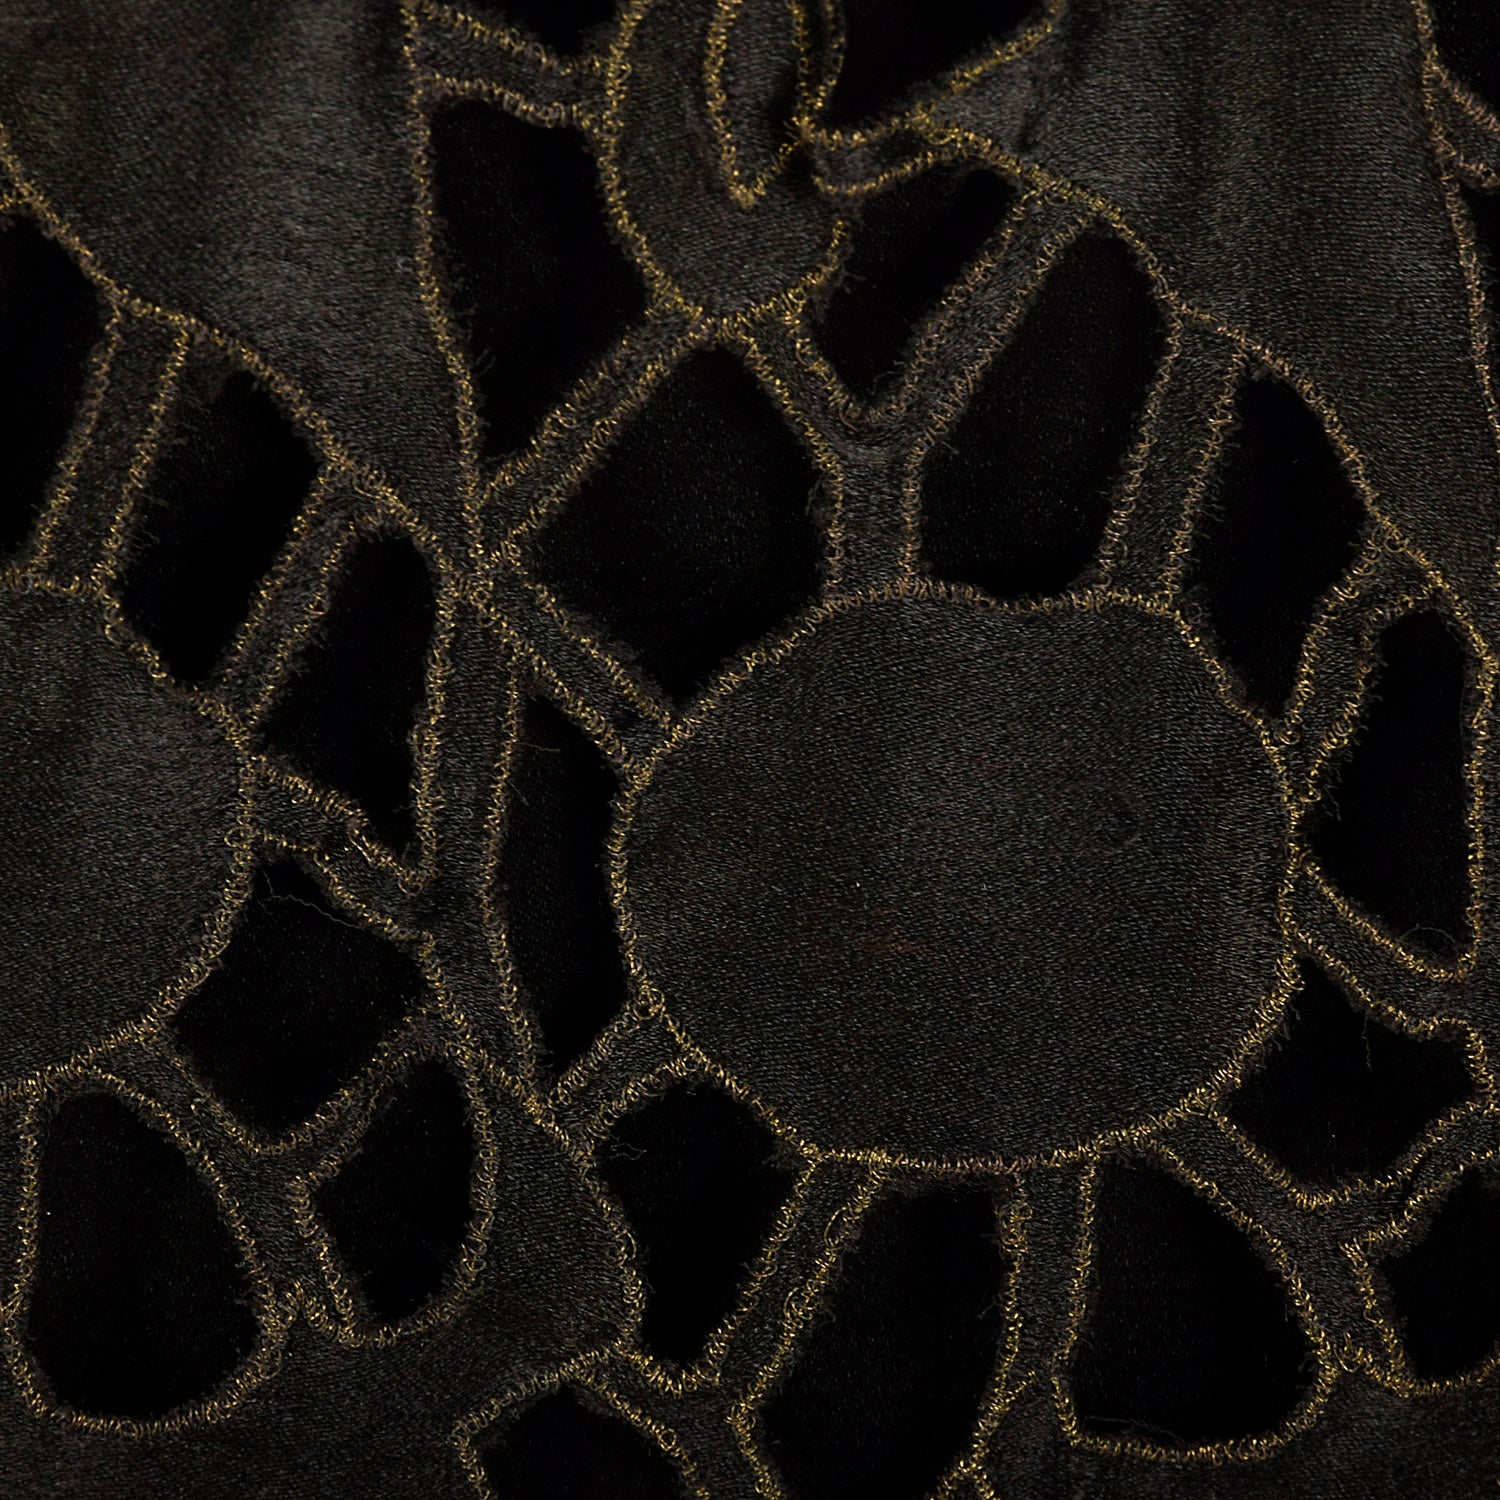 Medium 1920s Black Drop Waist Dress